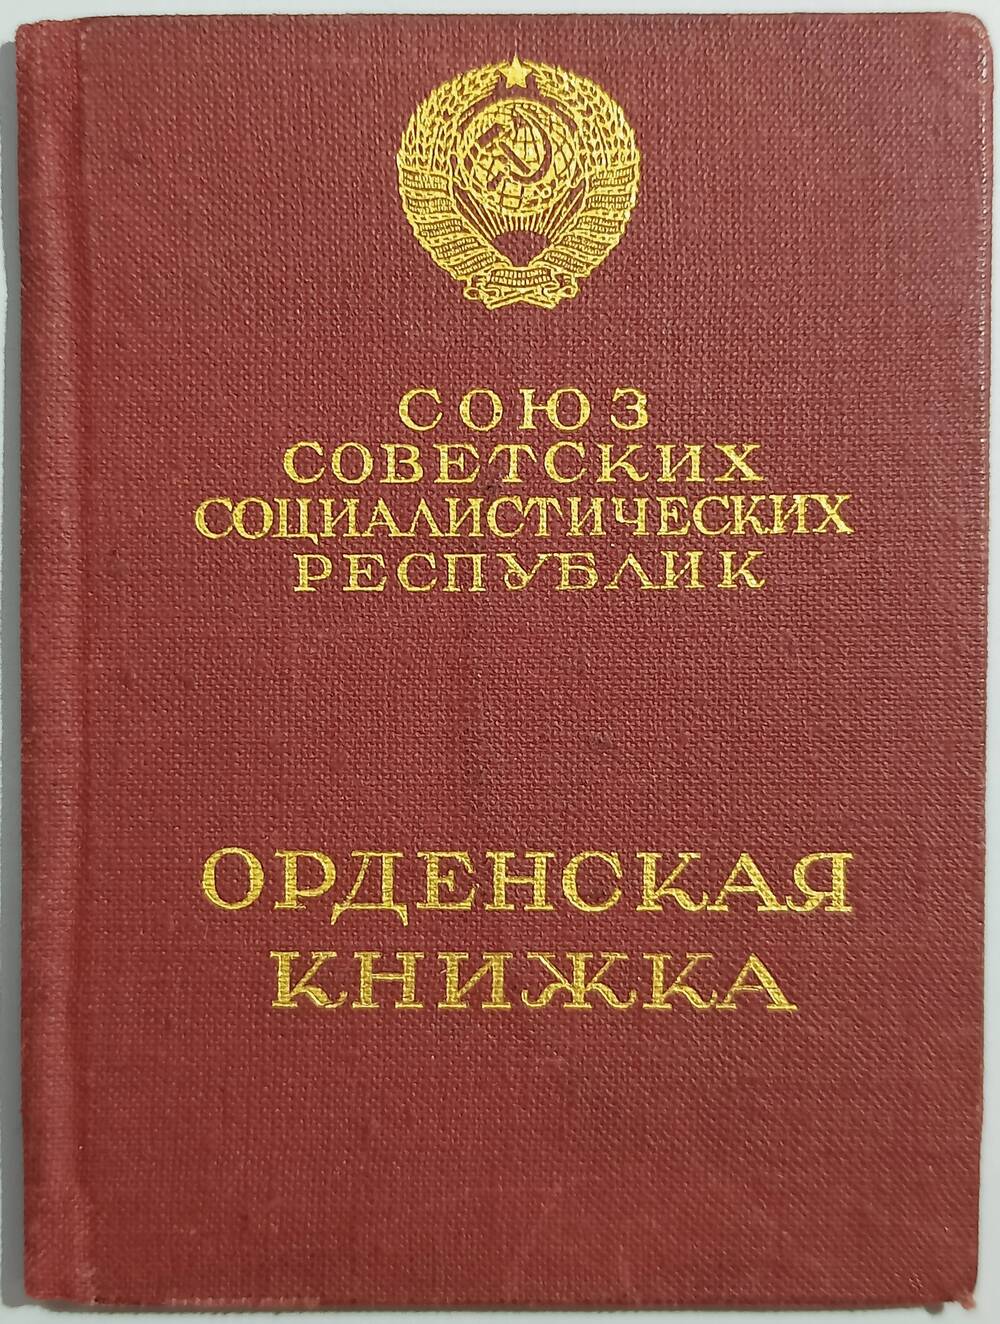 Орденская книжка № 130503 Почтарева Г.М. 14 января 1944 г.